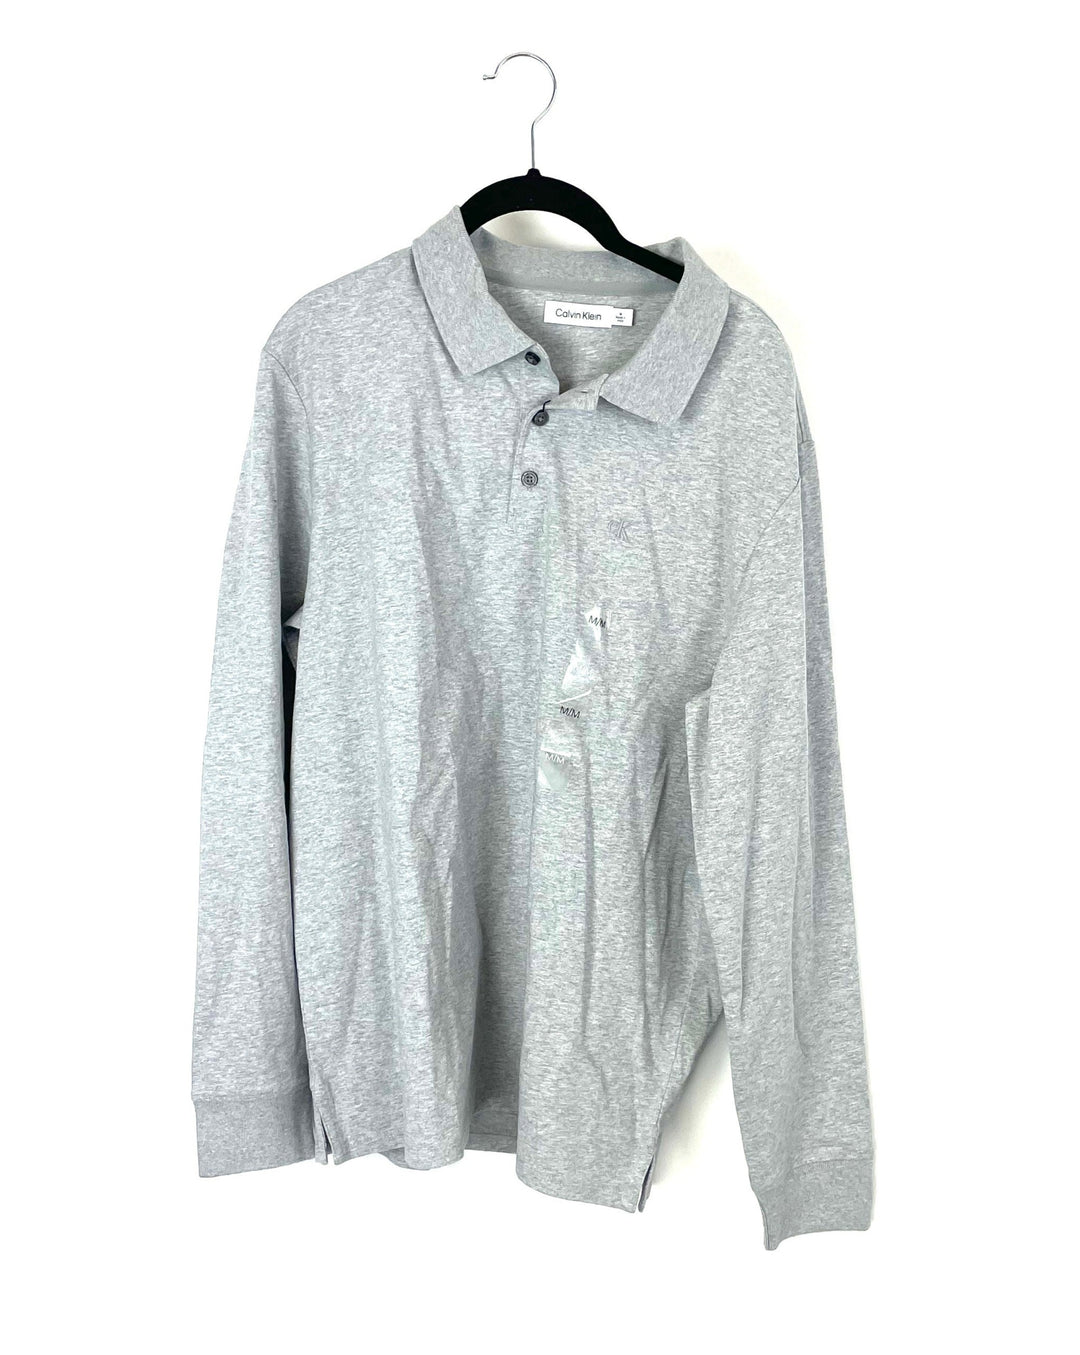 MENS Grey Long Sleeve Shirt - Medium